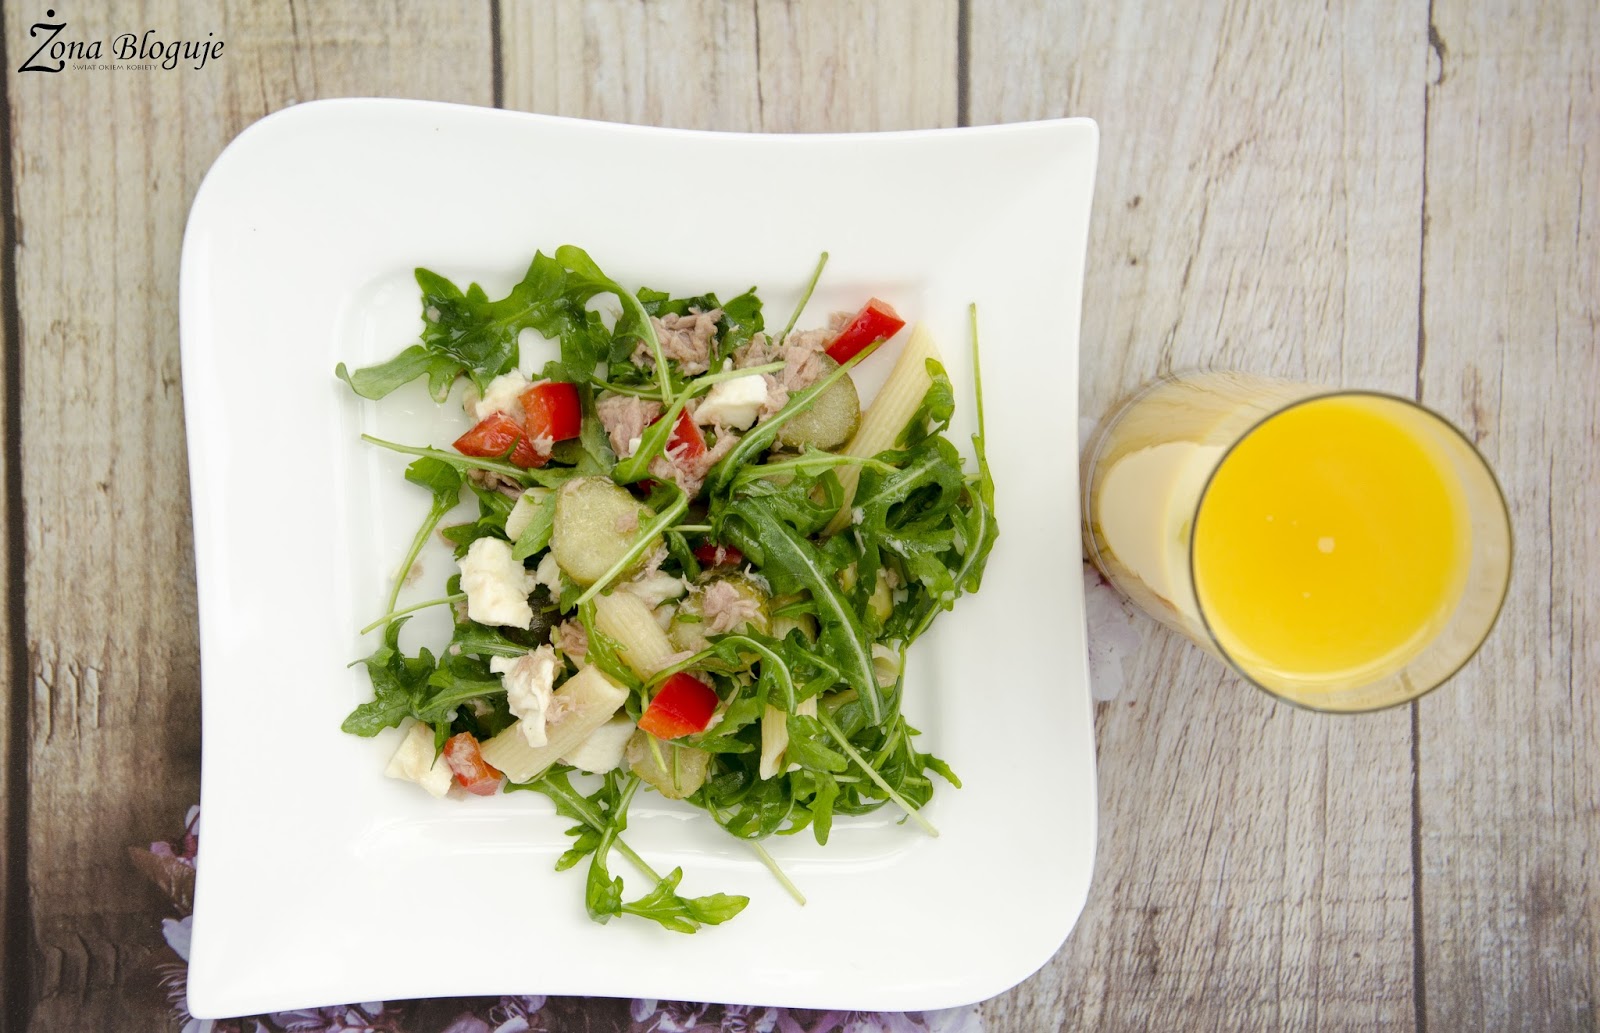 Zona Bloguje - swiat okiem kobiety: Moj pomysl na obiad w upalny dzien, czyli salatka z tunczykiem